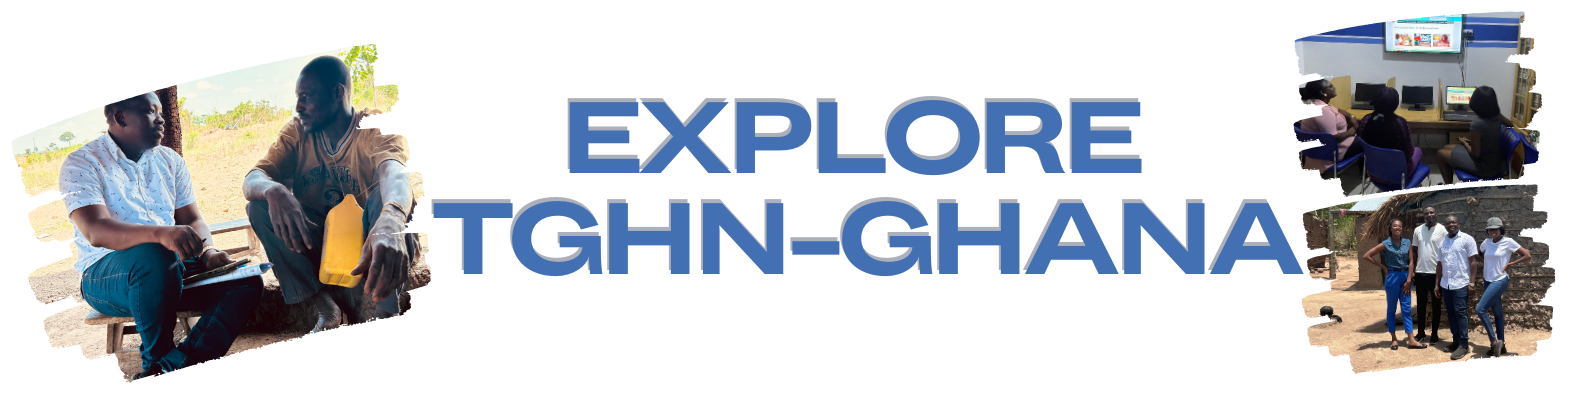 tghn- ghana explore